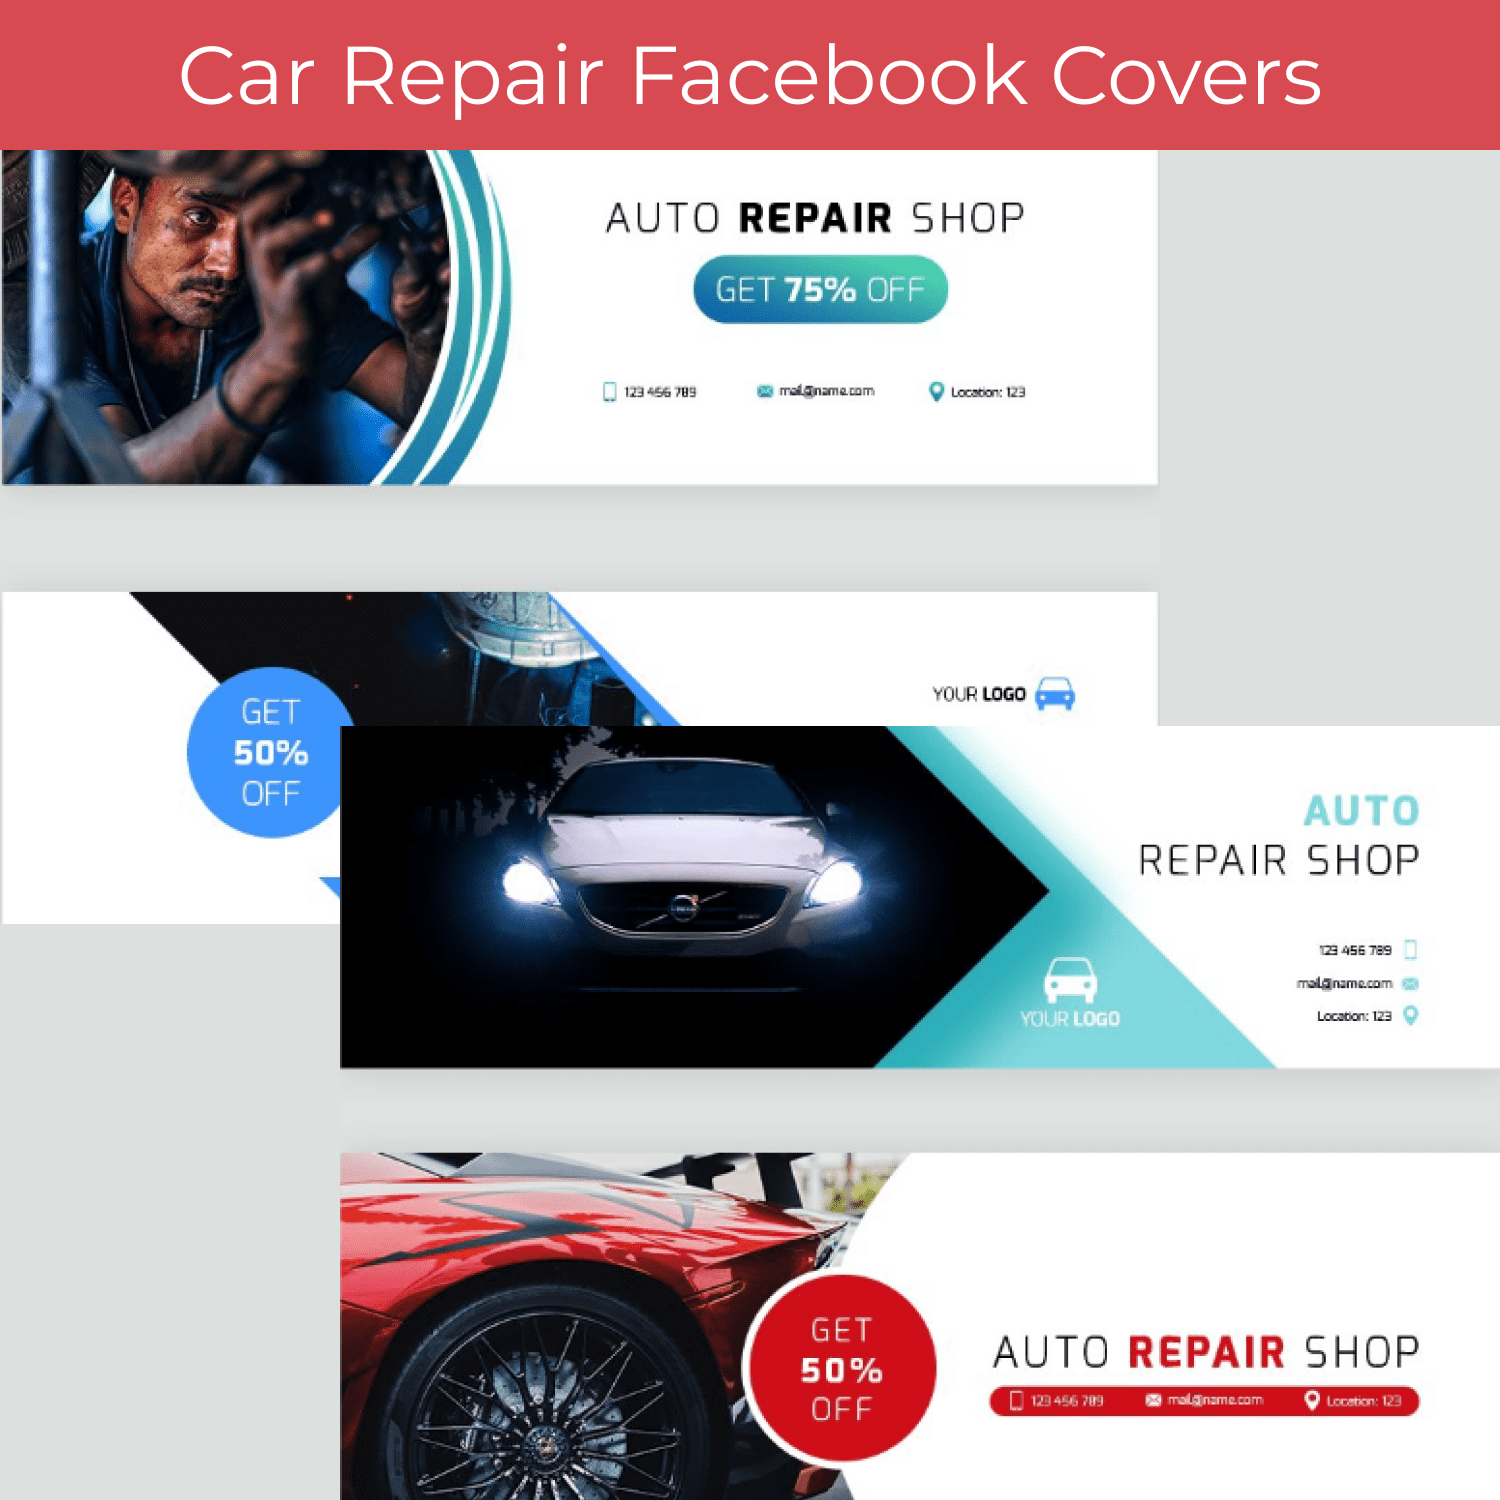 Car Repair Facebook Covers main cover.